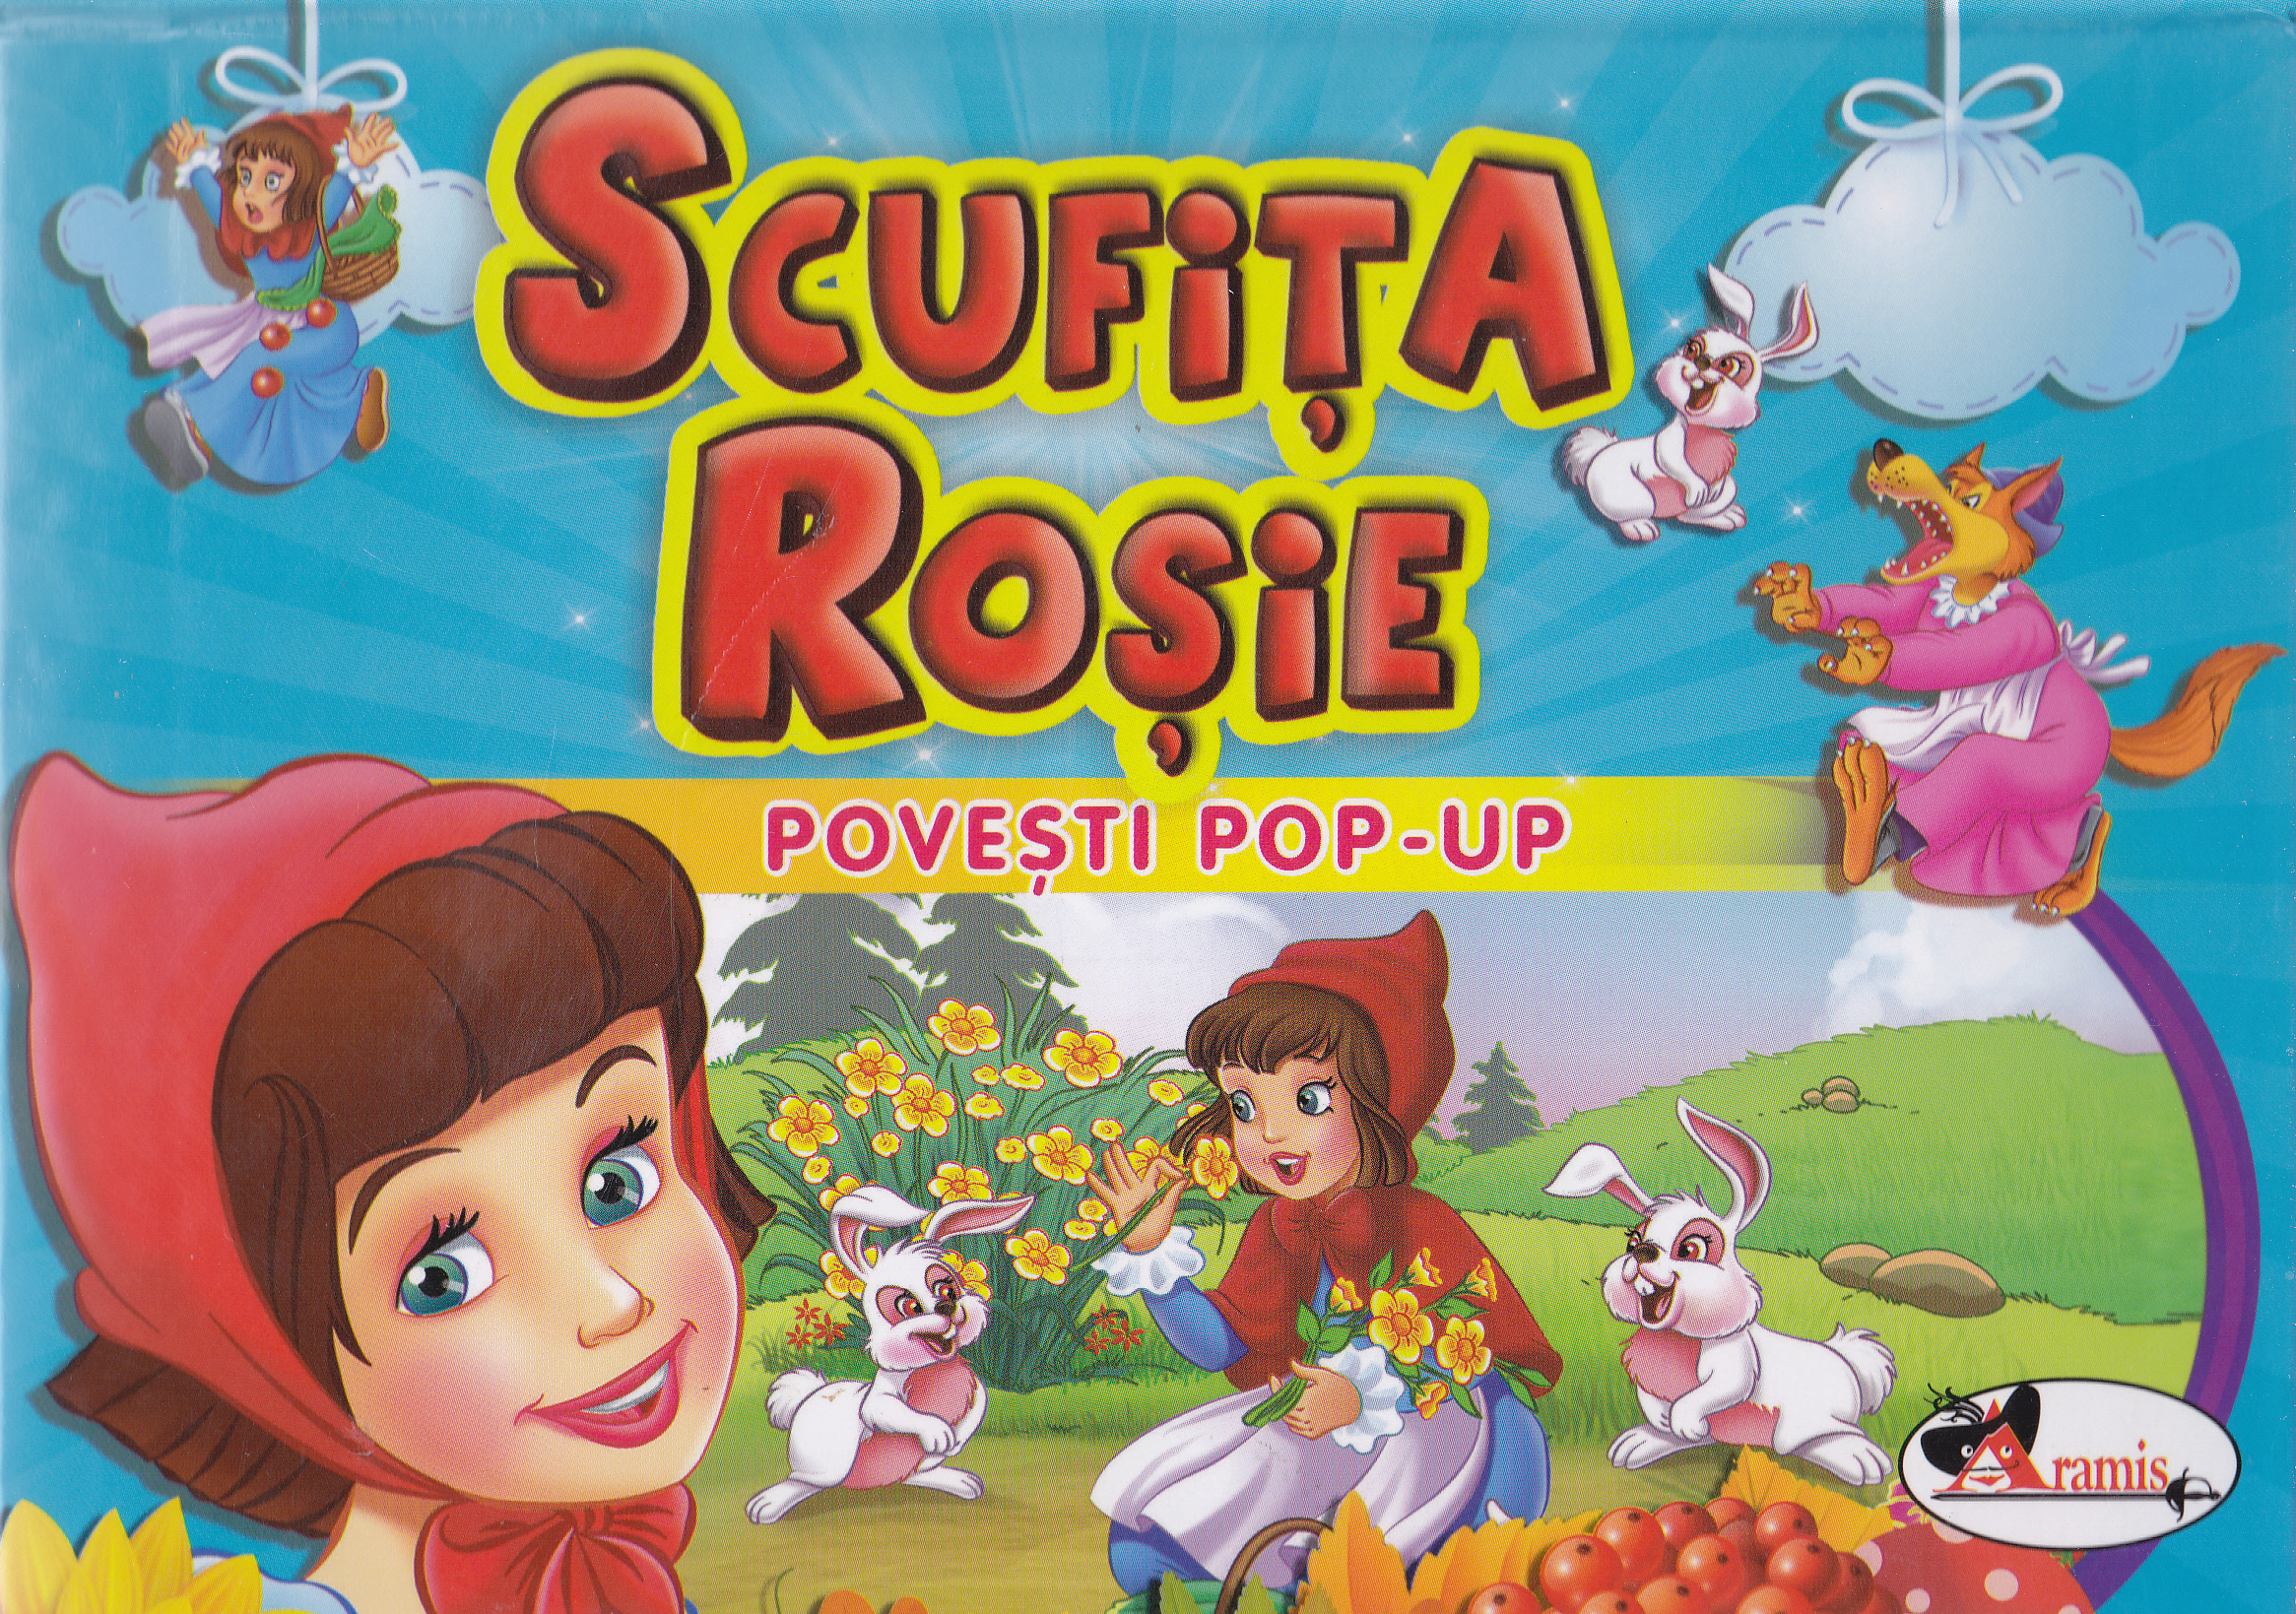 Scufita Rosie - Povesti Pop-up